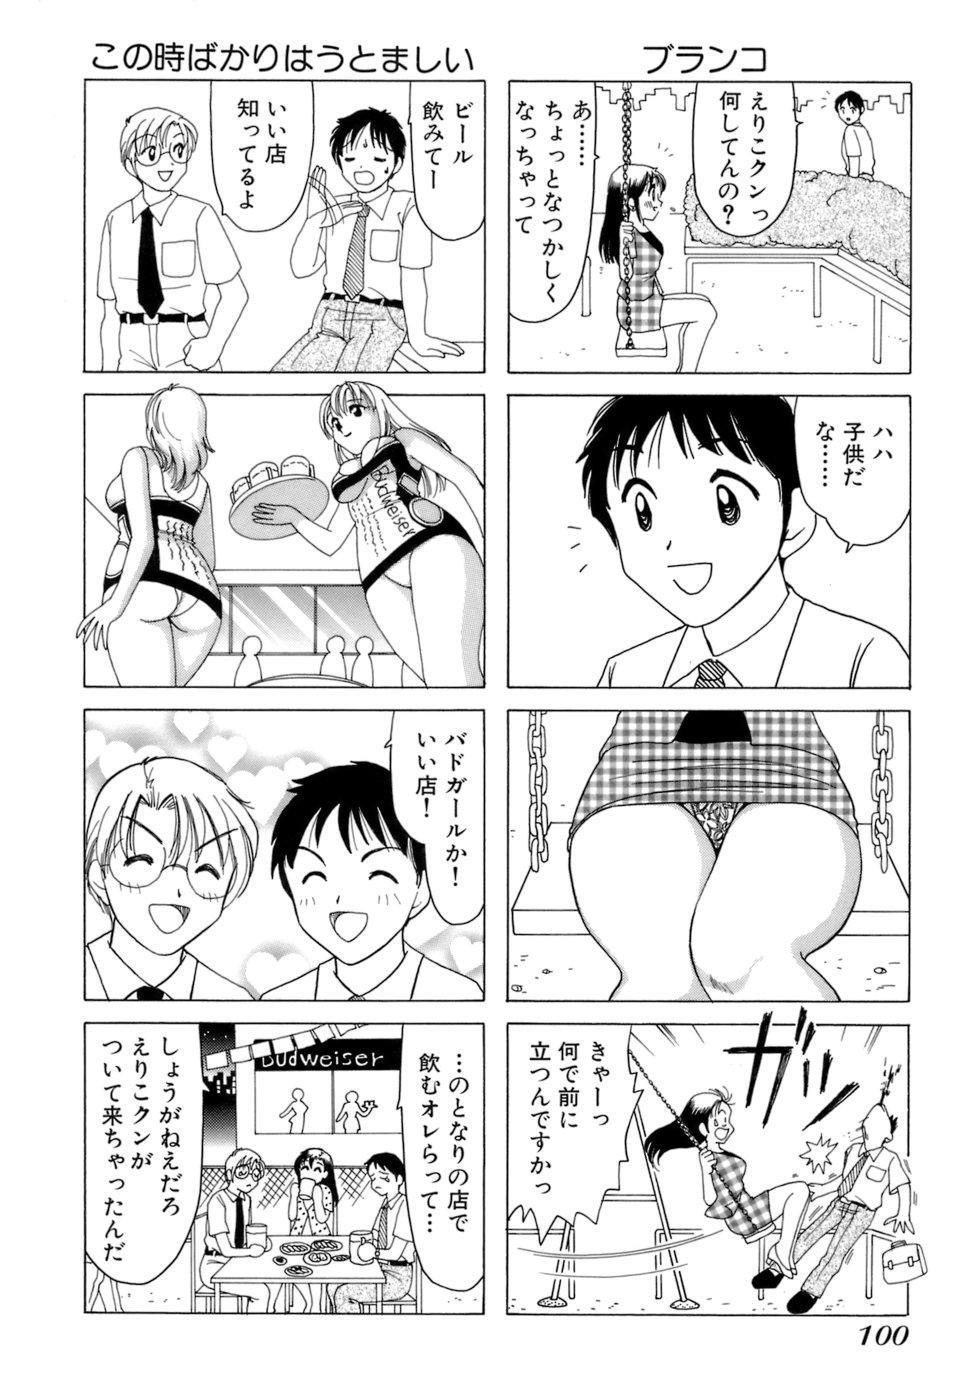 Eriko-kun, Ocha!! Vol.01 102